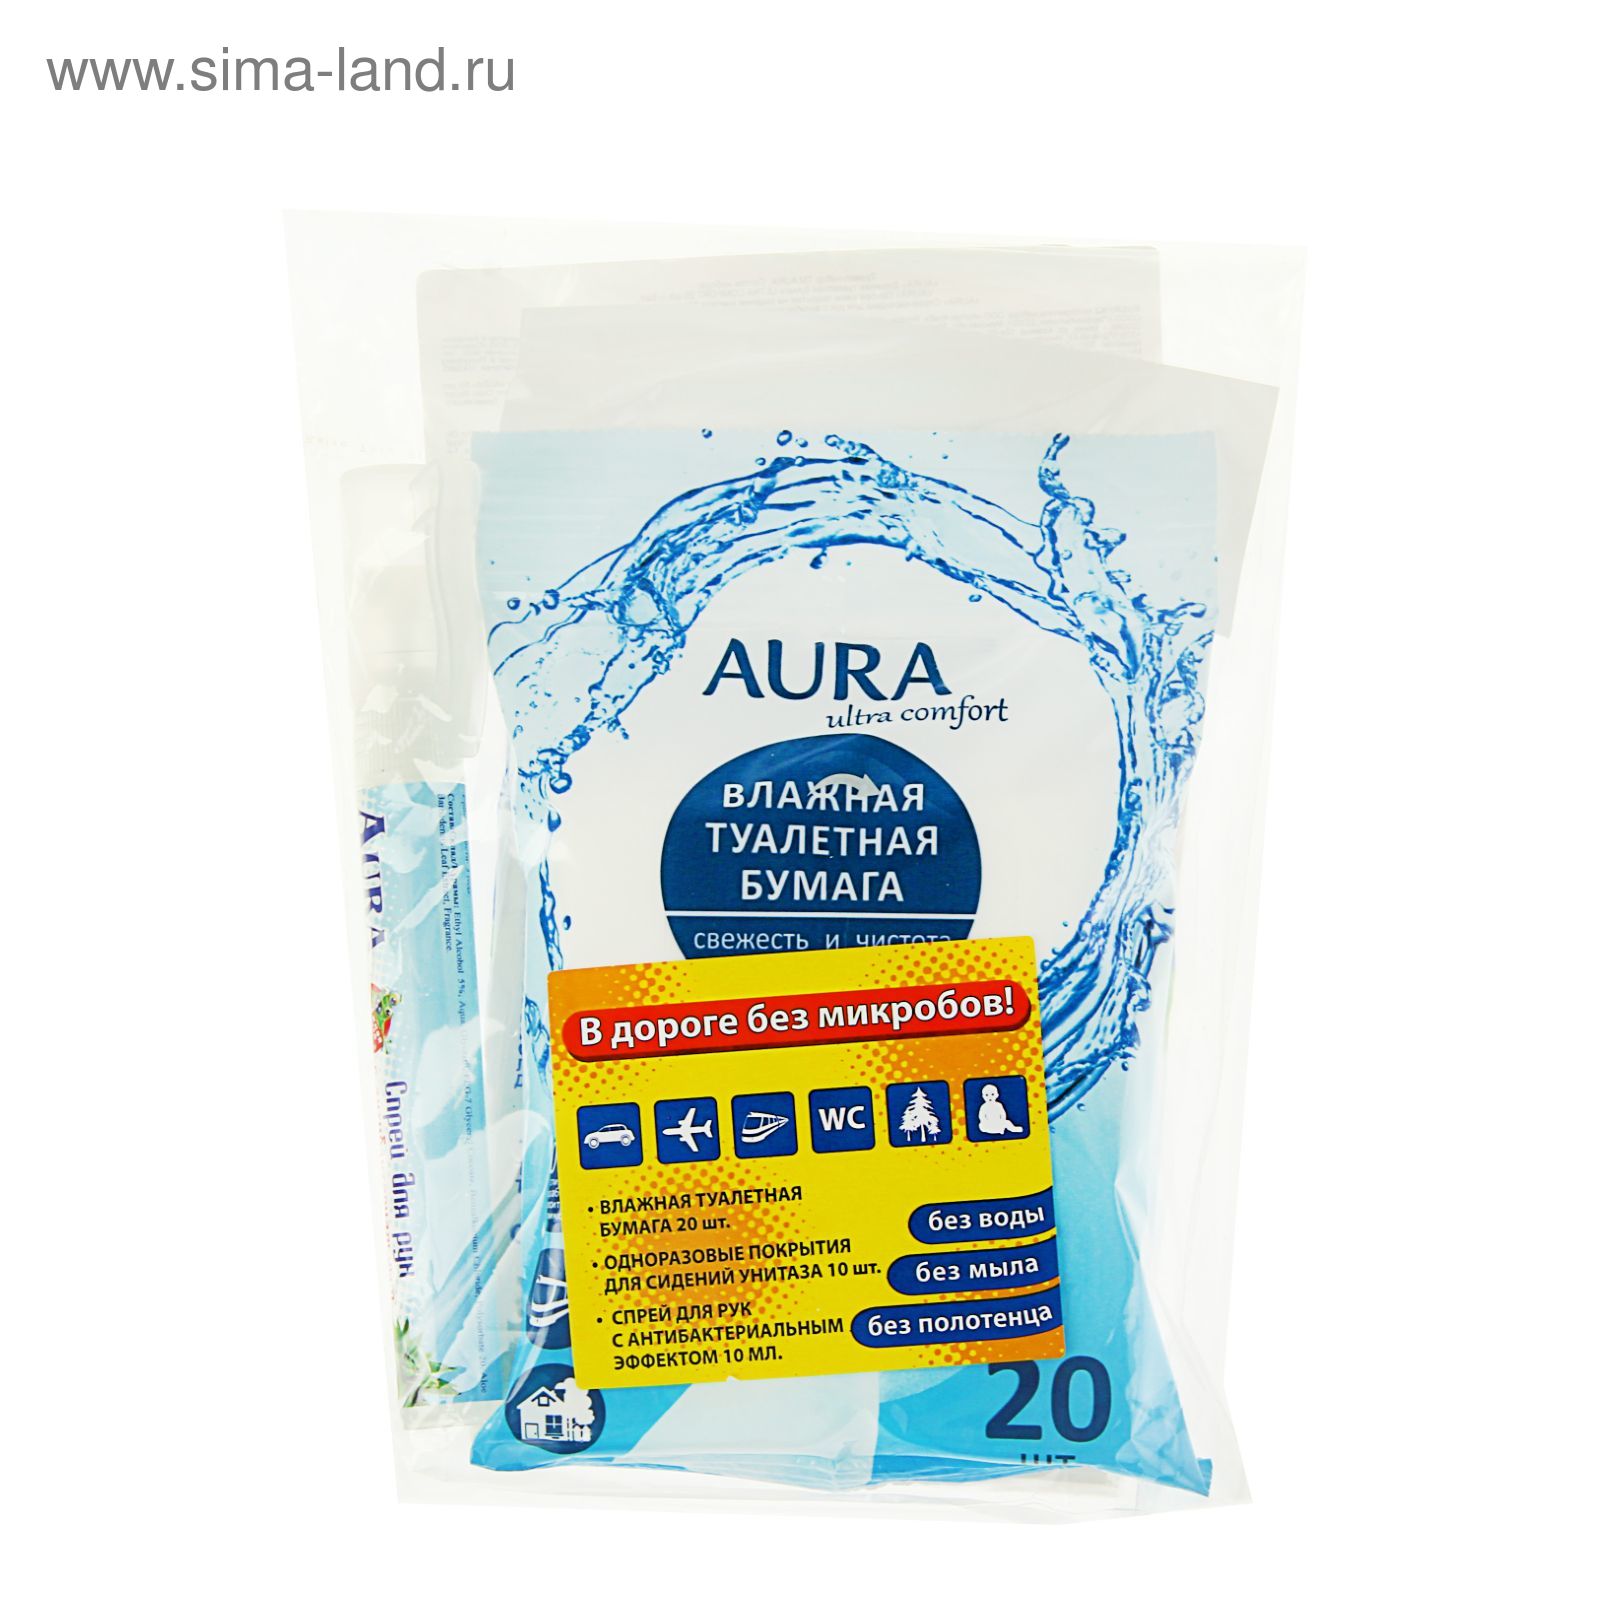 Набор туристический AURA Travel: влажная туалетная бумага, 20 шт, одноразовые покрытия на сиденье унитаза, 10 шт, спрей для рук Sanitelle антисептический,